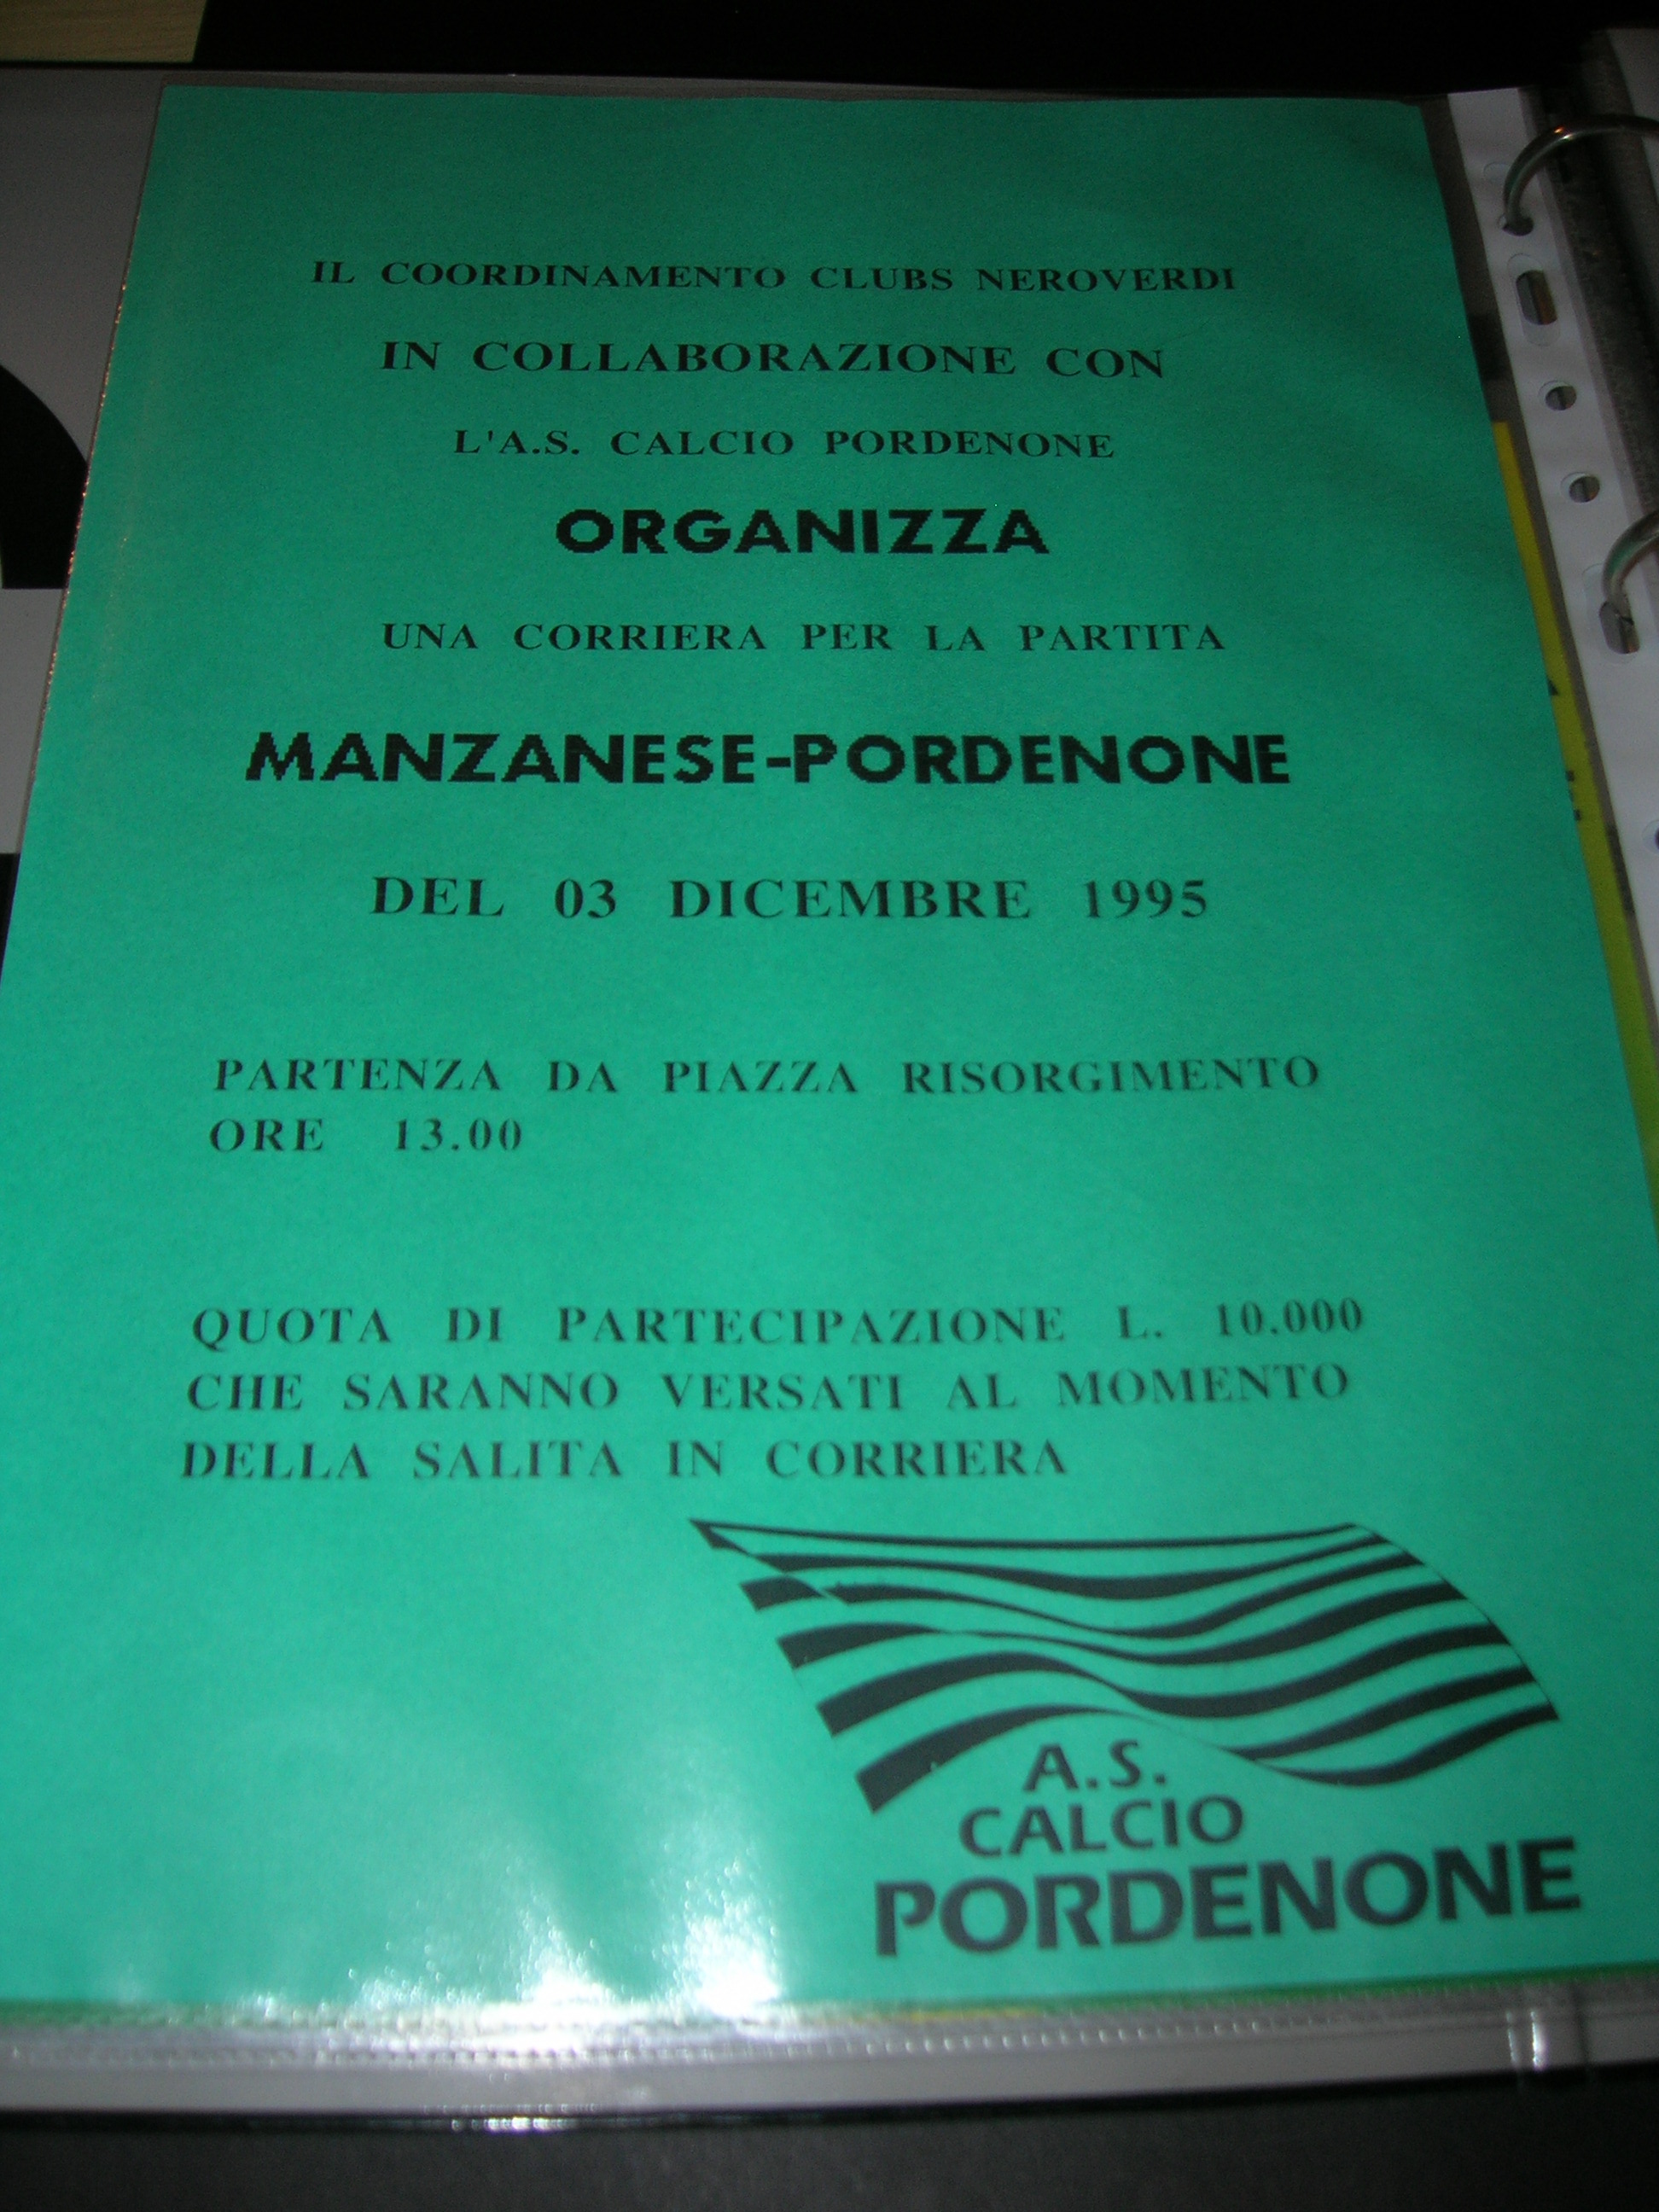 Calcio  Pordenone  dicembre 1995 organizza una corriera per la partita